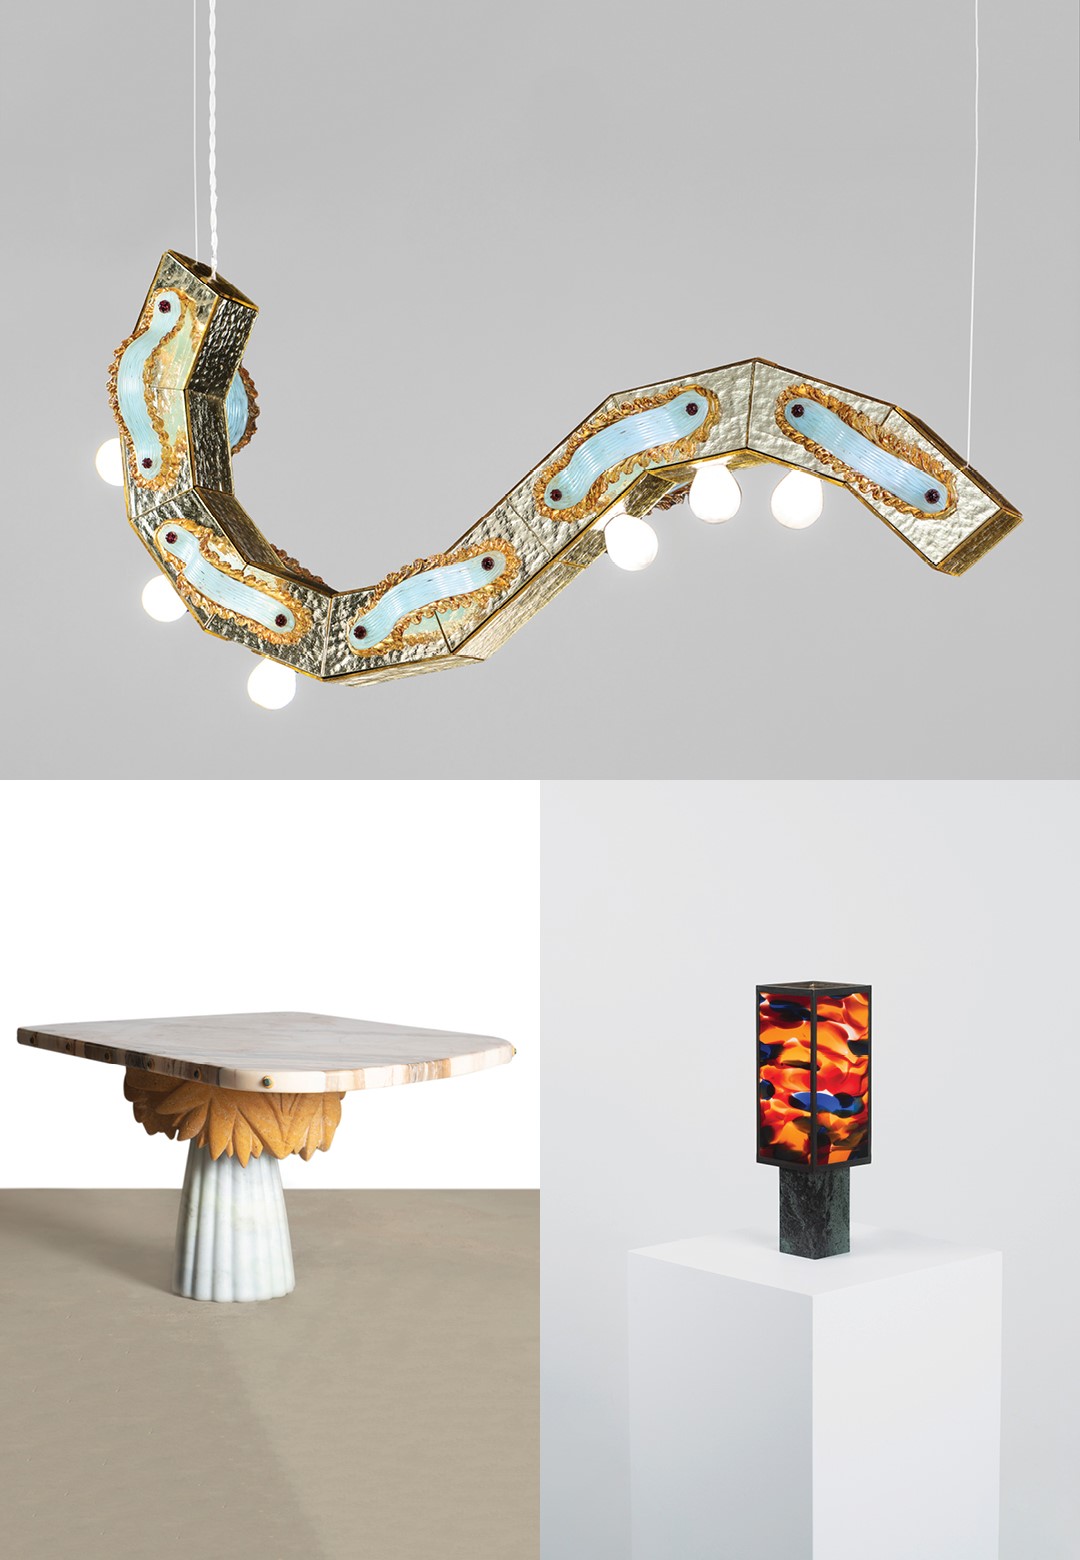 Art, lighting and furniture assemble at Nilufar Gallery’s Milan Design Week exhibit